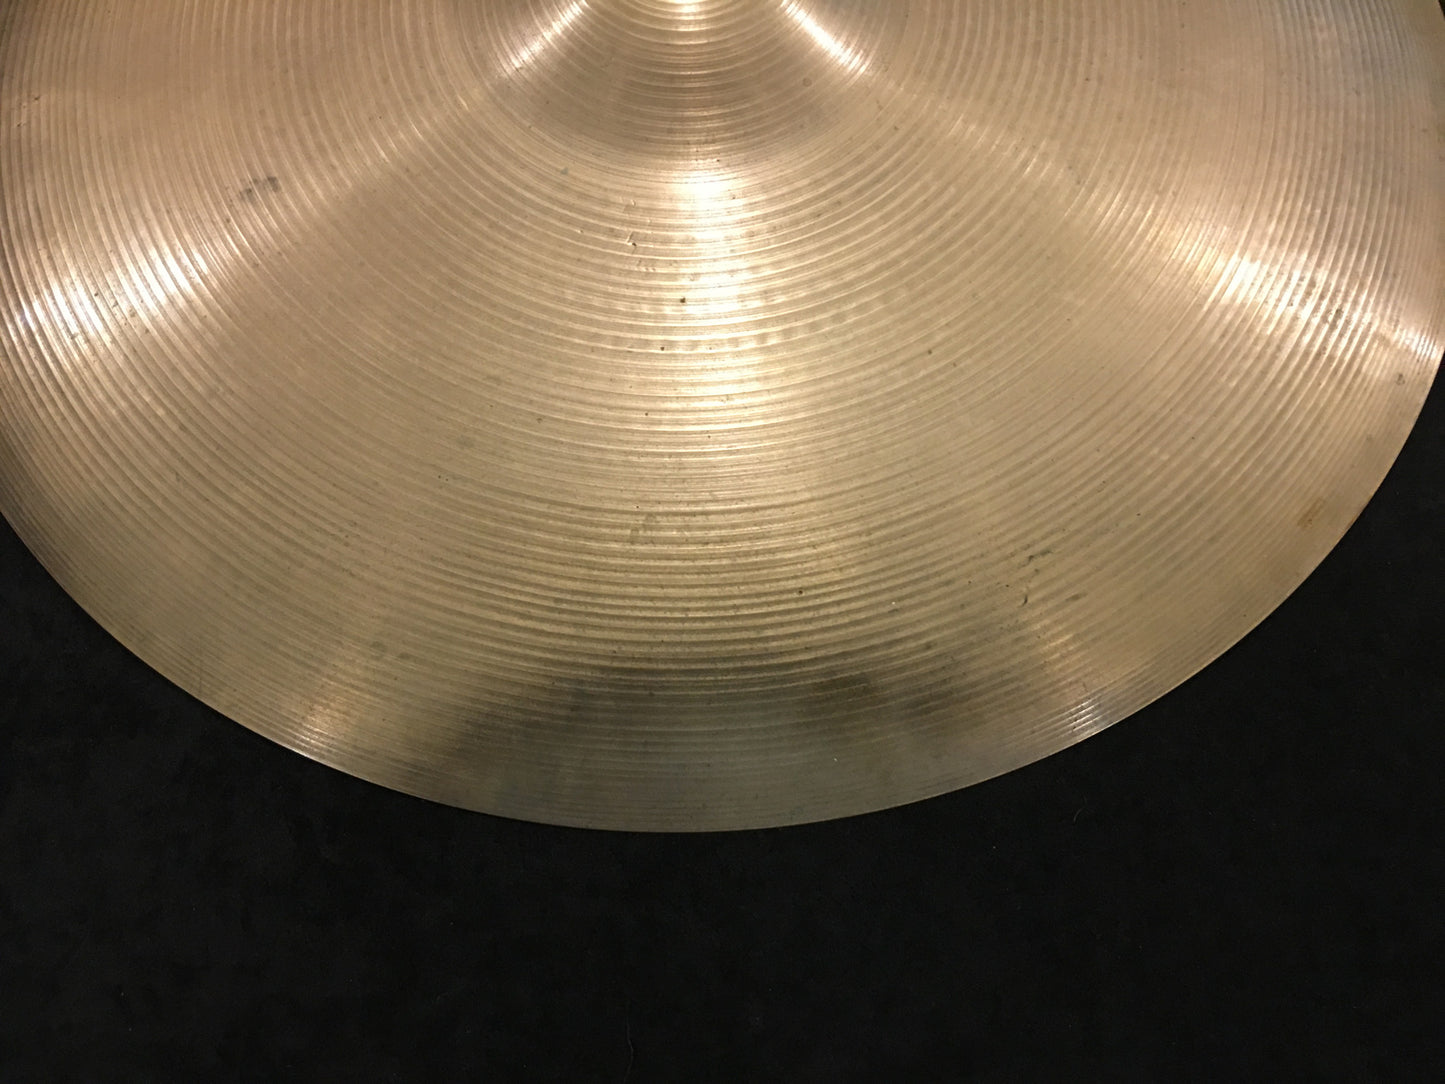 20" Zildjian A 1960's Ride Cymbal 2374g #139 *Sound File*